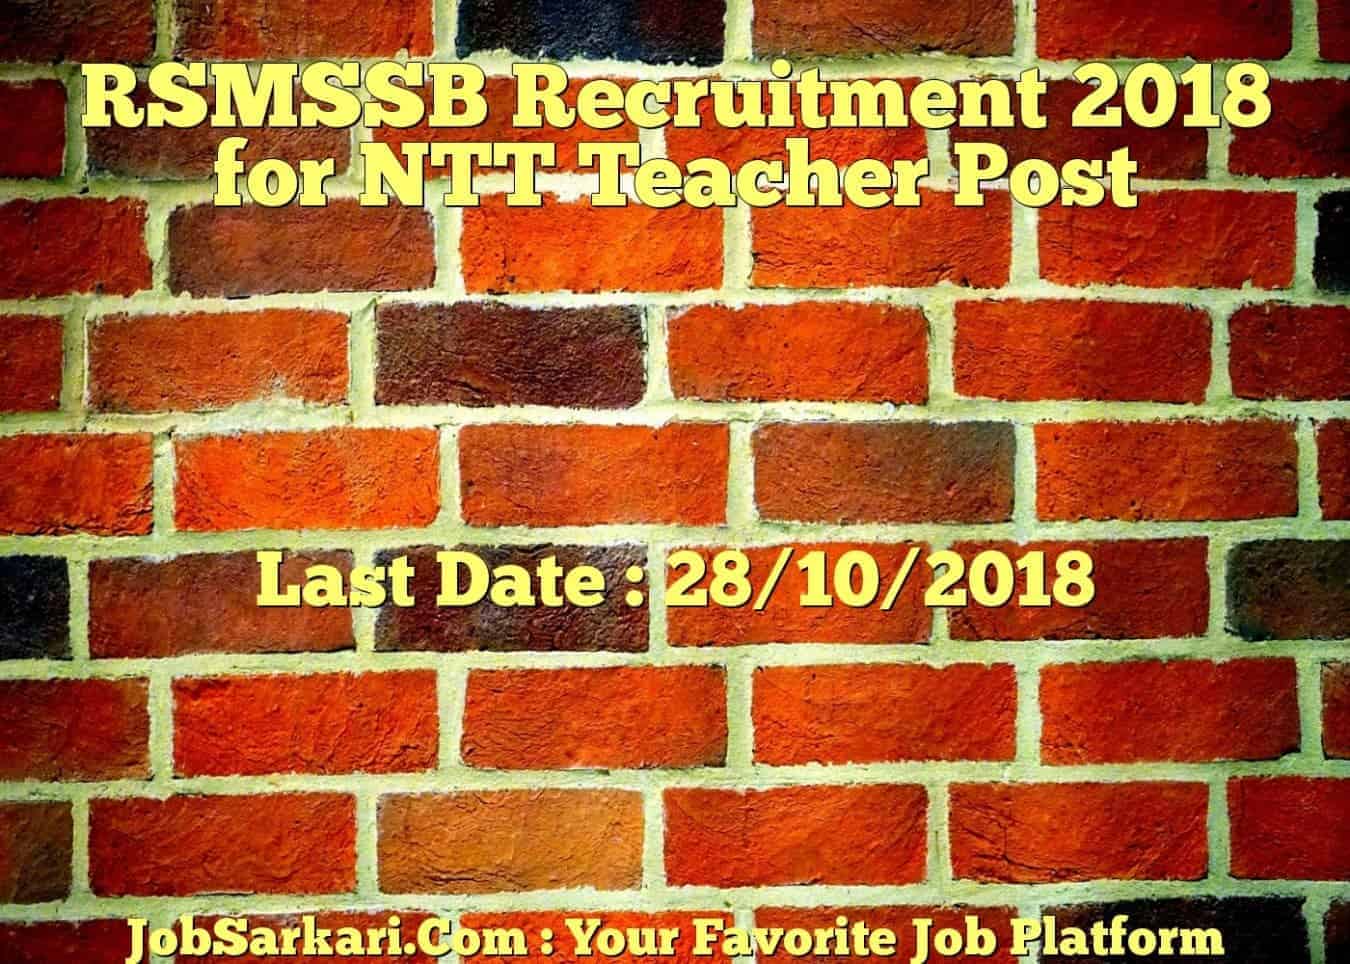 RSMSSB Recruitment 2018 for NTT Teacher Post